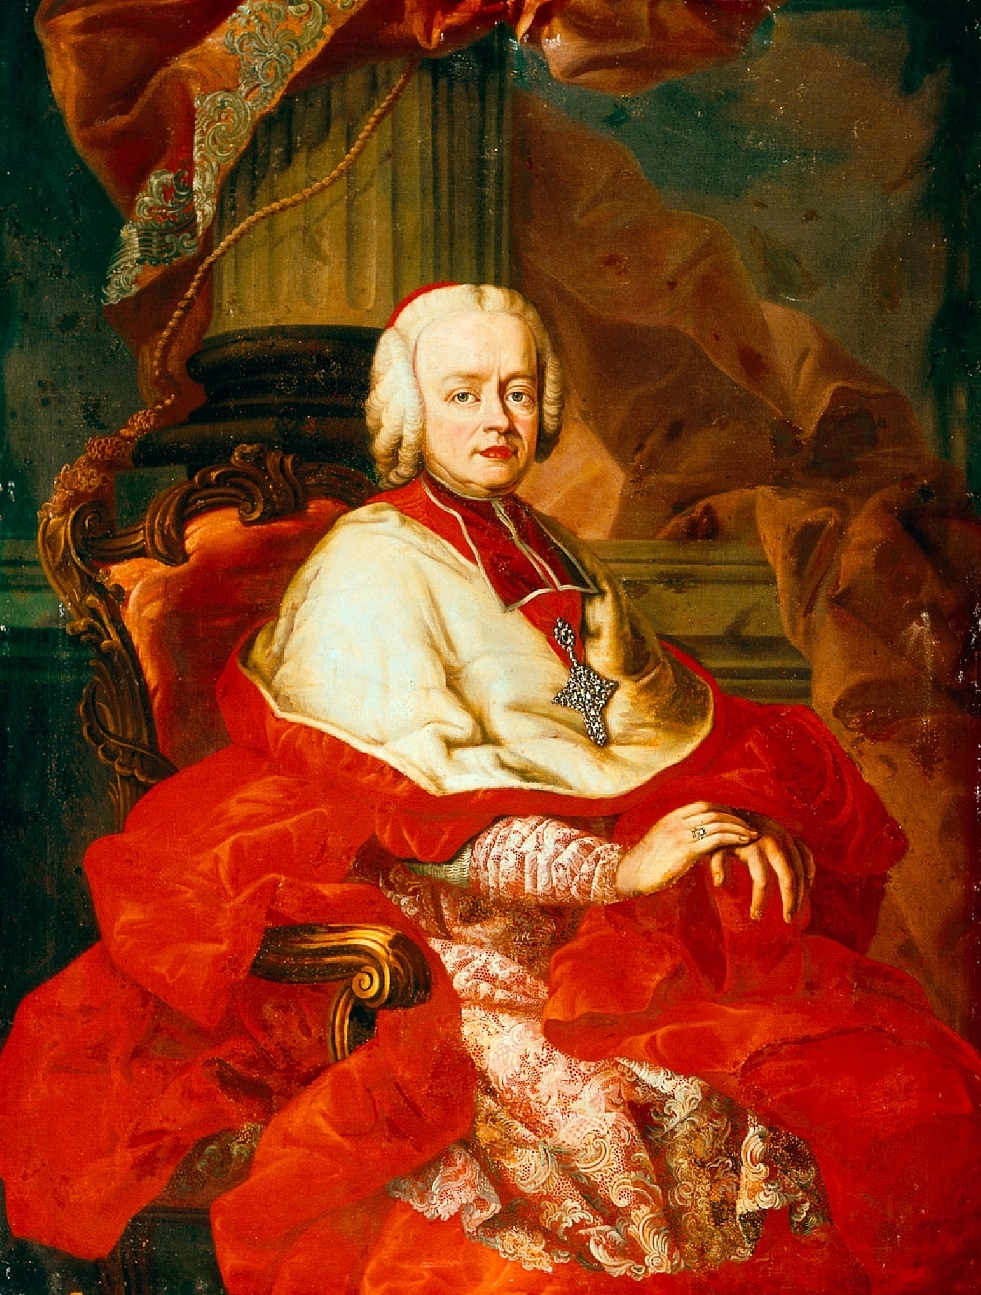 Portrait of Archbishop Sigismund von Schrattenbach, Franz Xaver König, 1755, oil on canvas, inv. no. 2560-49